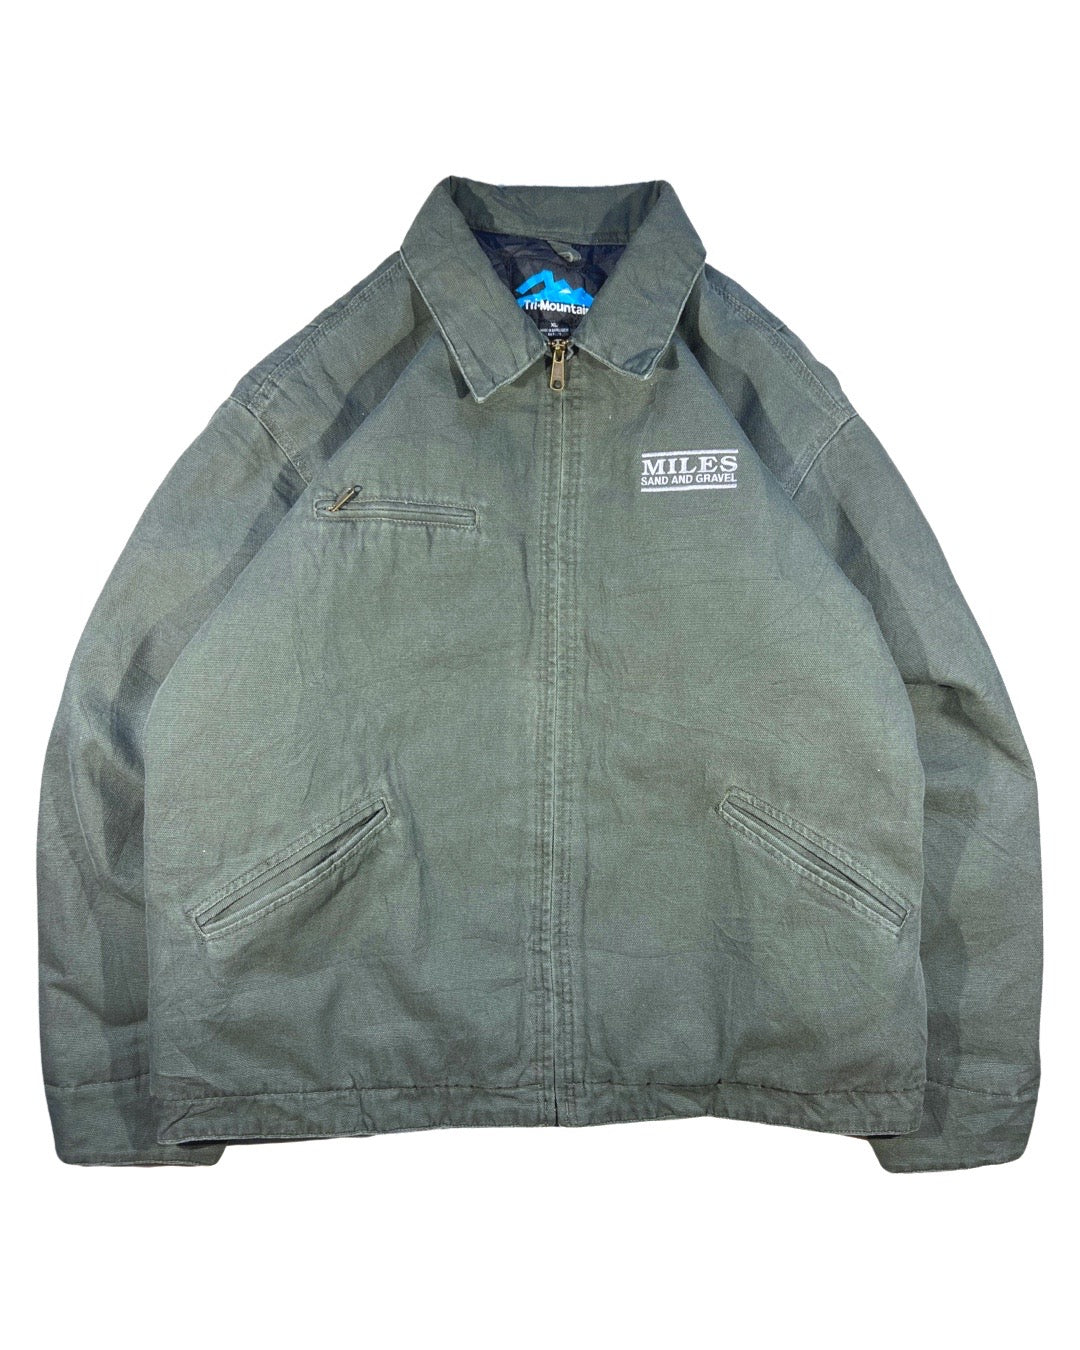 Vintage Work Jacket - XL